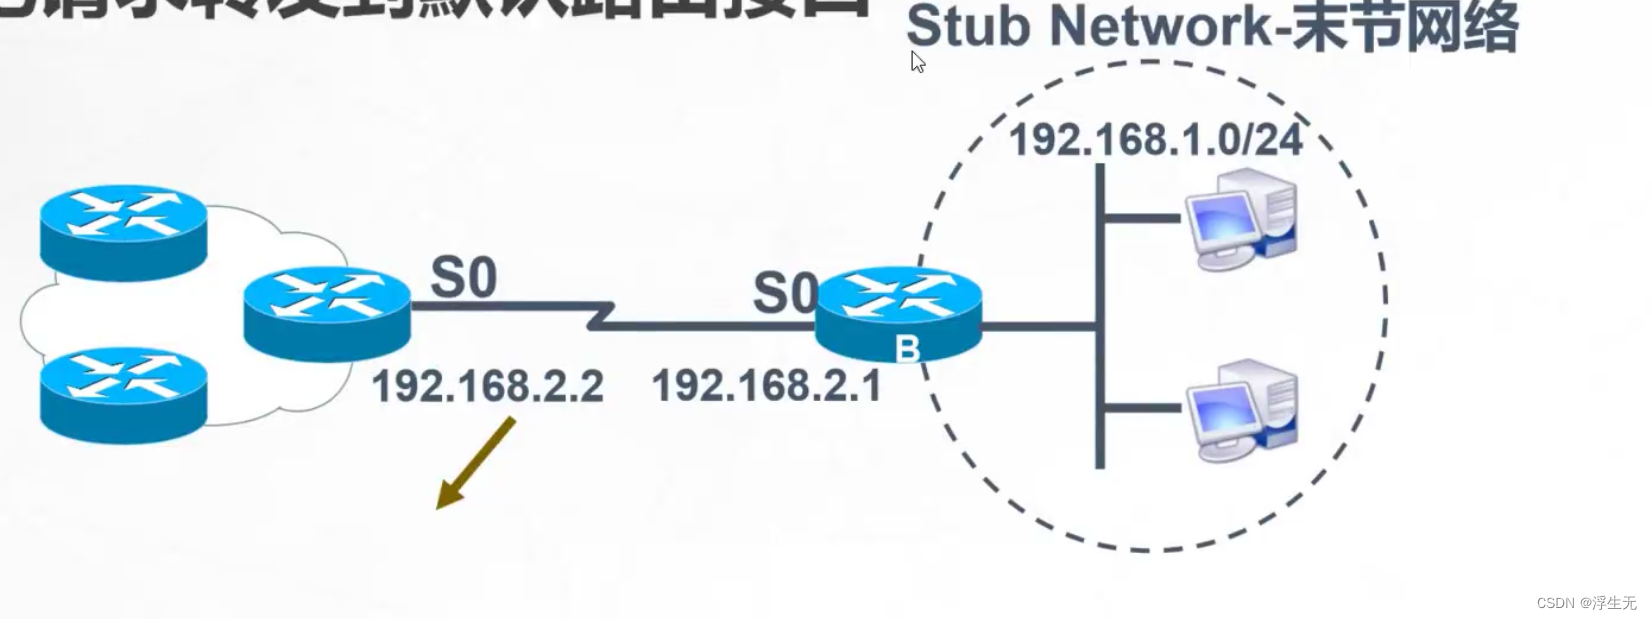 在这里插入图片描述这个网络只有一个唯一的路径能够到达其他网络